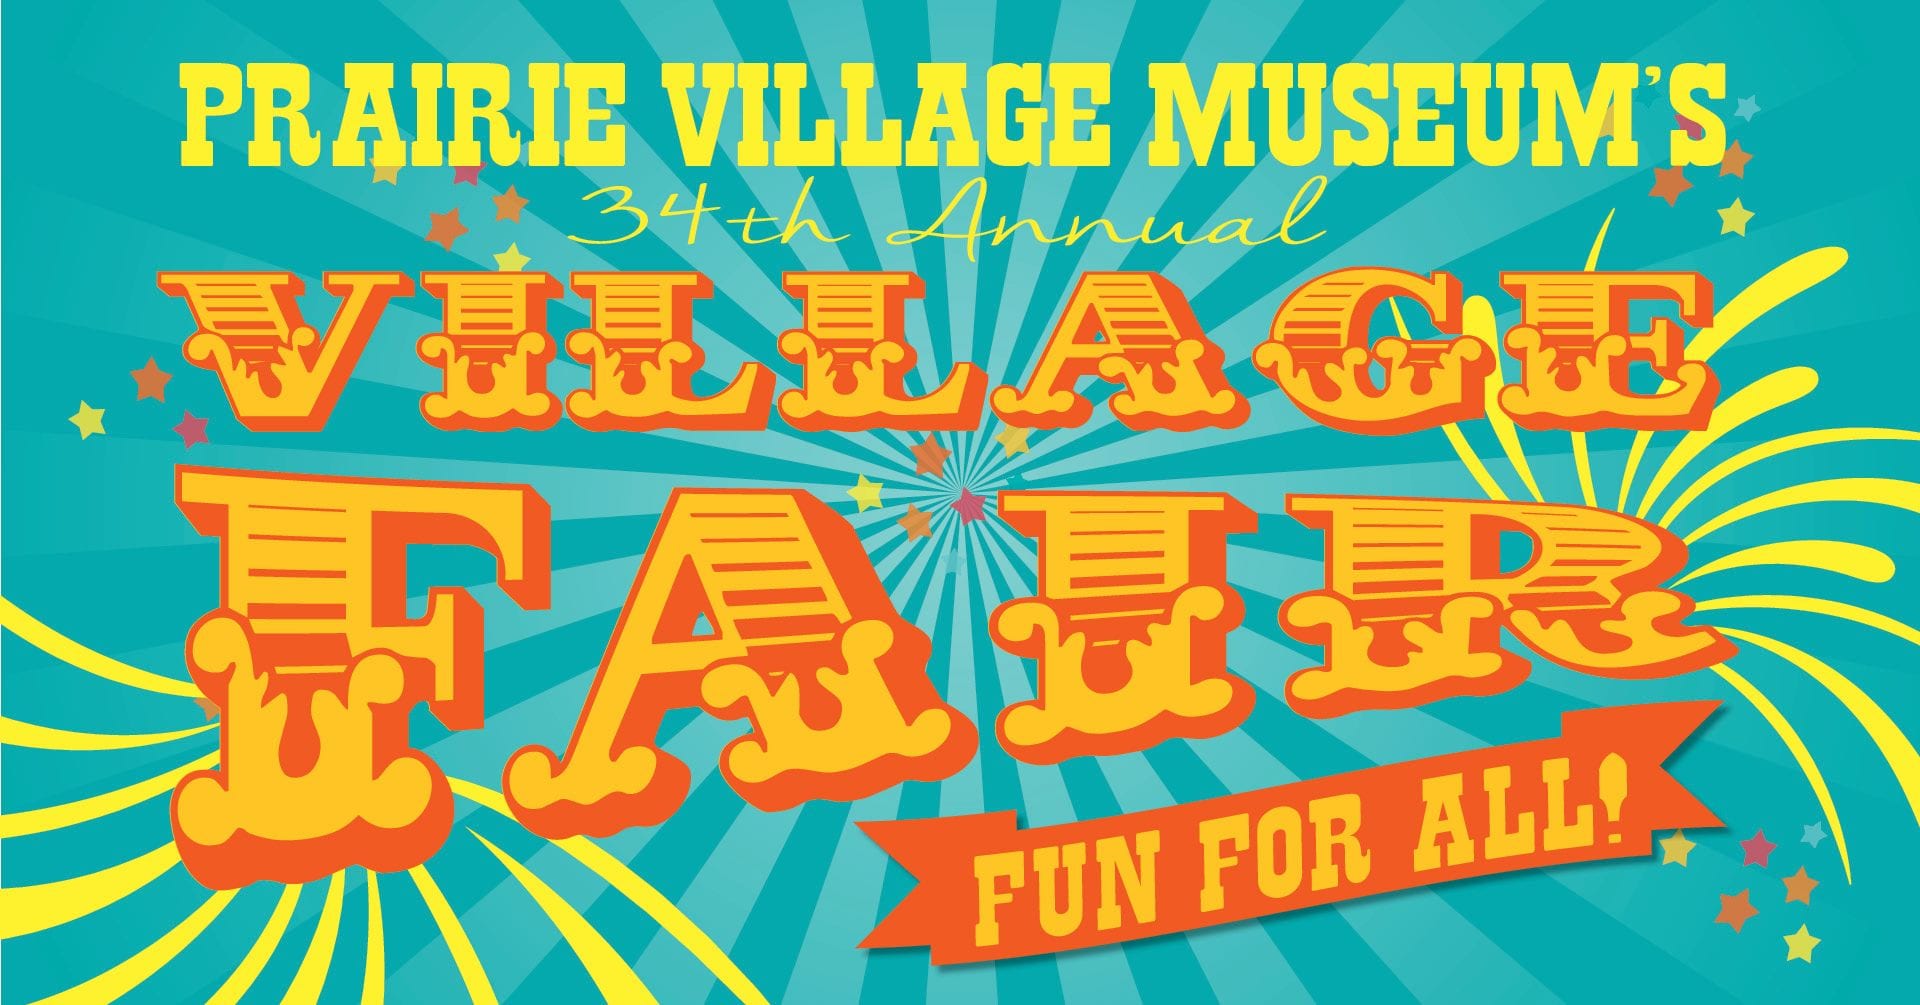 Prairie Village Museum hosts Village Fair on August 11 Northern Sentry